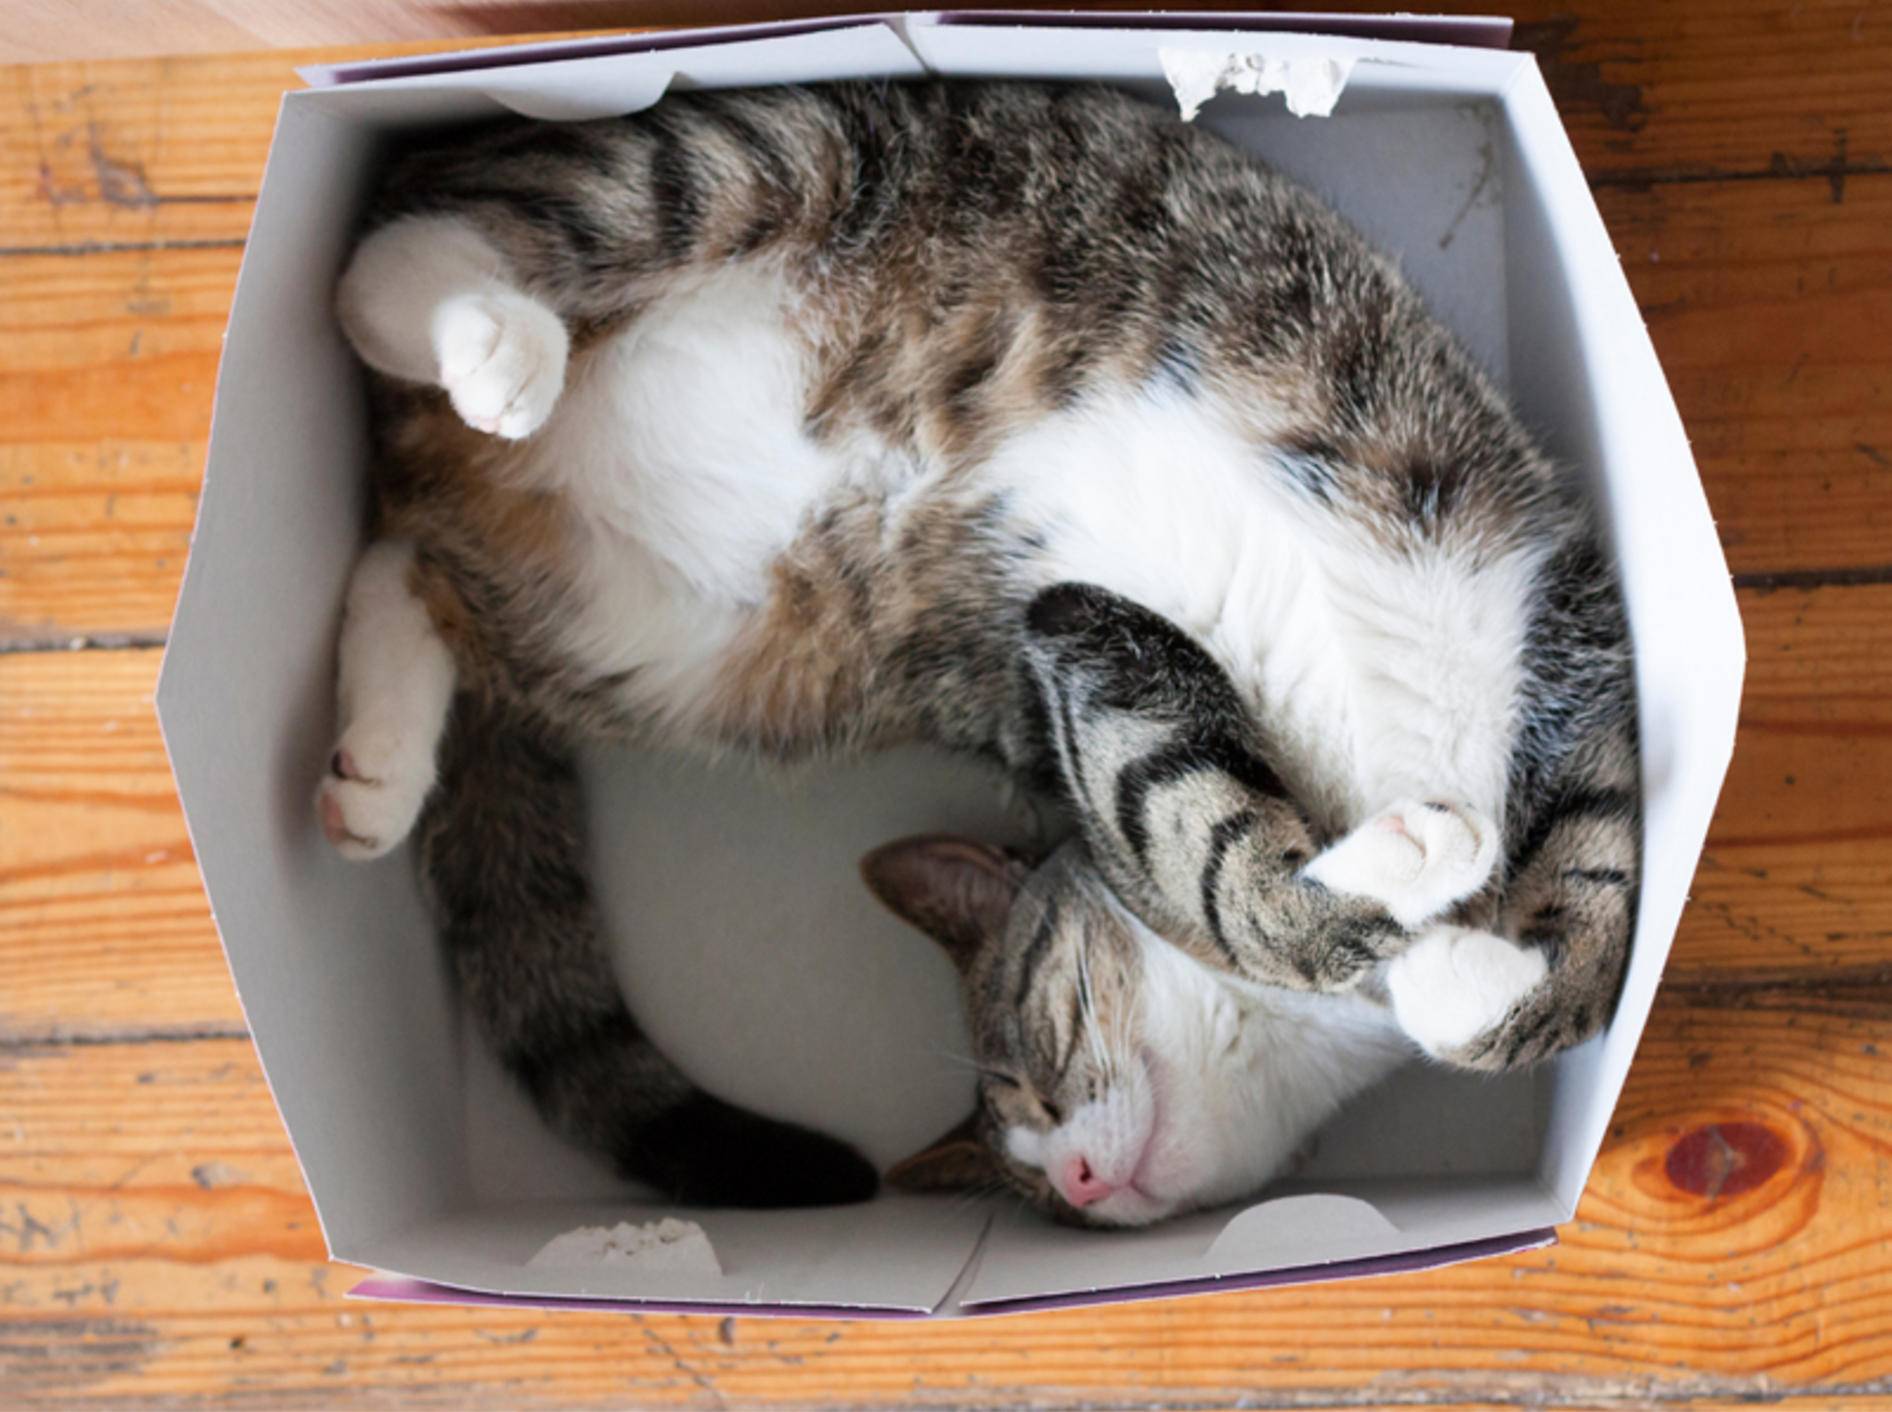 Im Karton schlafen? Kein Problem für Katzen! - Bild: Shutterstock / klevers